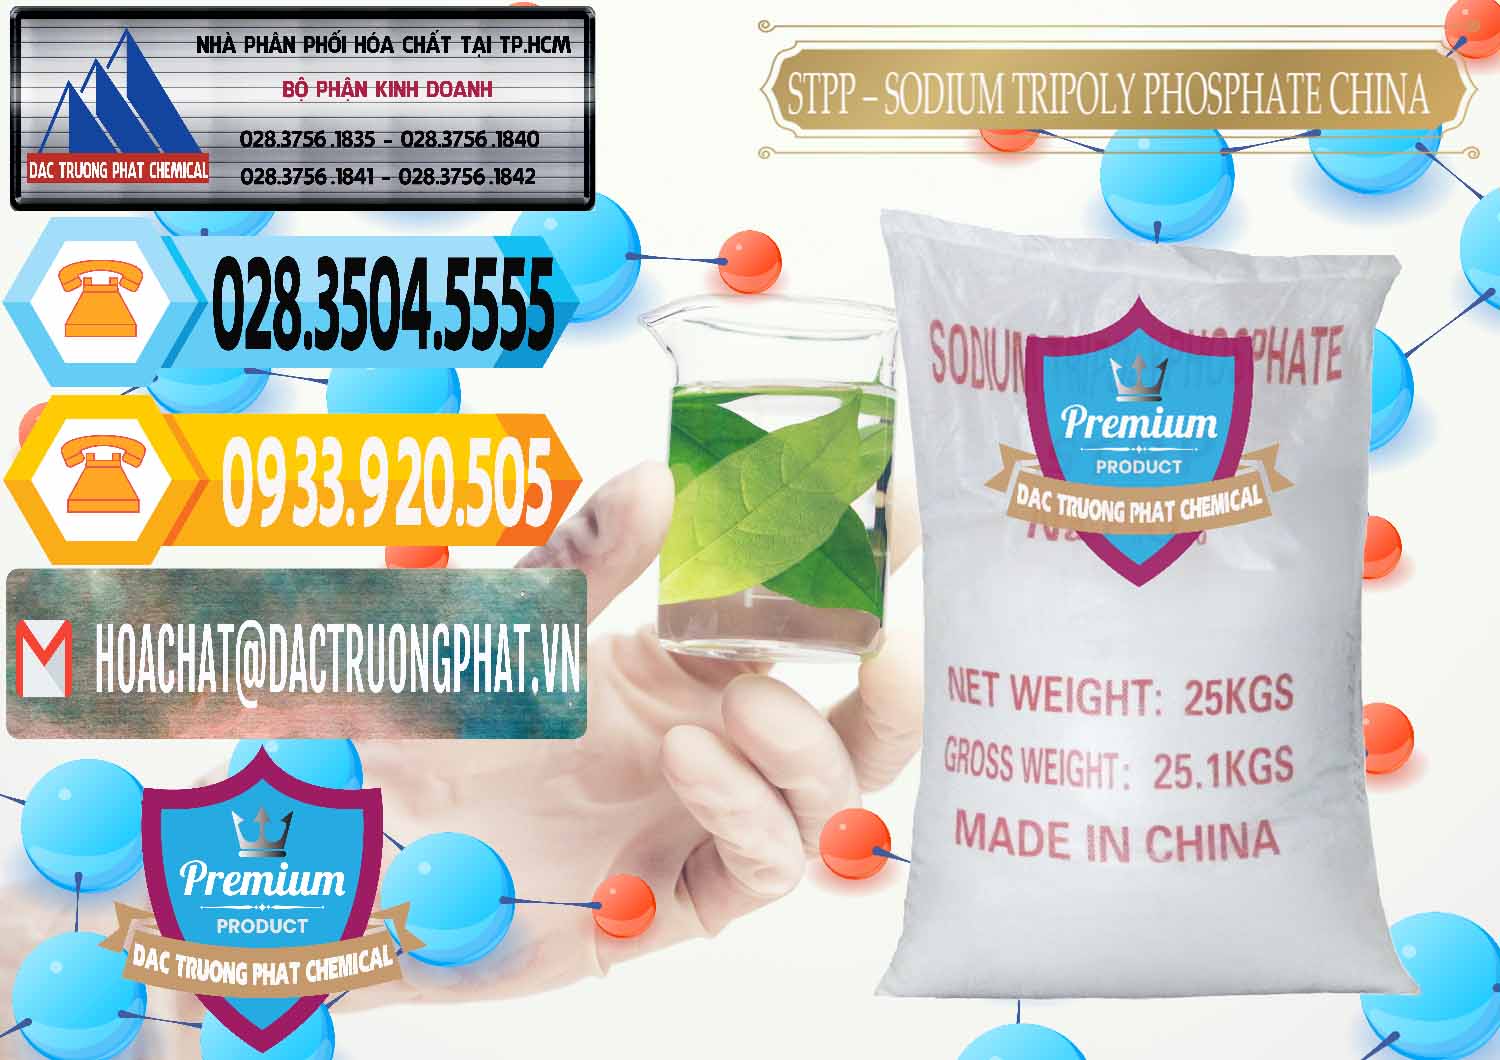 Chuyên kinh doanh ( bán ) Sodium Tripoly Phosphate - STPP 96% Chữ Đỏ Trung Quốc China - 0155 - Nơi phân phối và cung ứng hóa chất tại TP.HCM - hoachattayrua.net